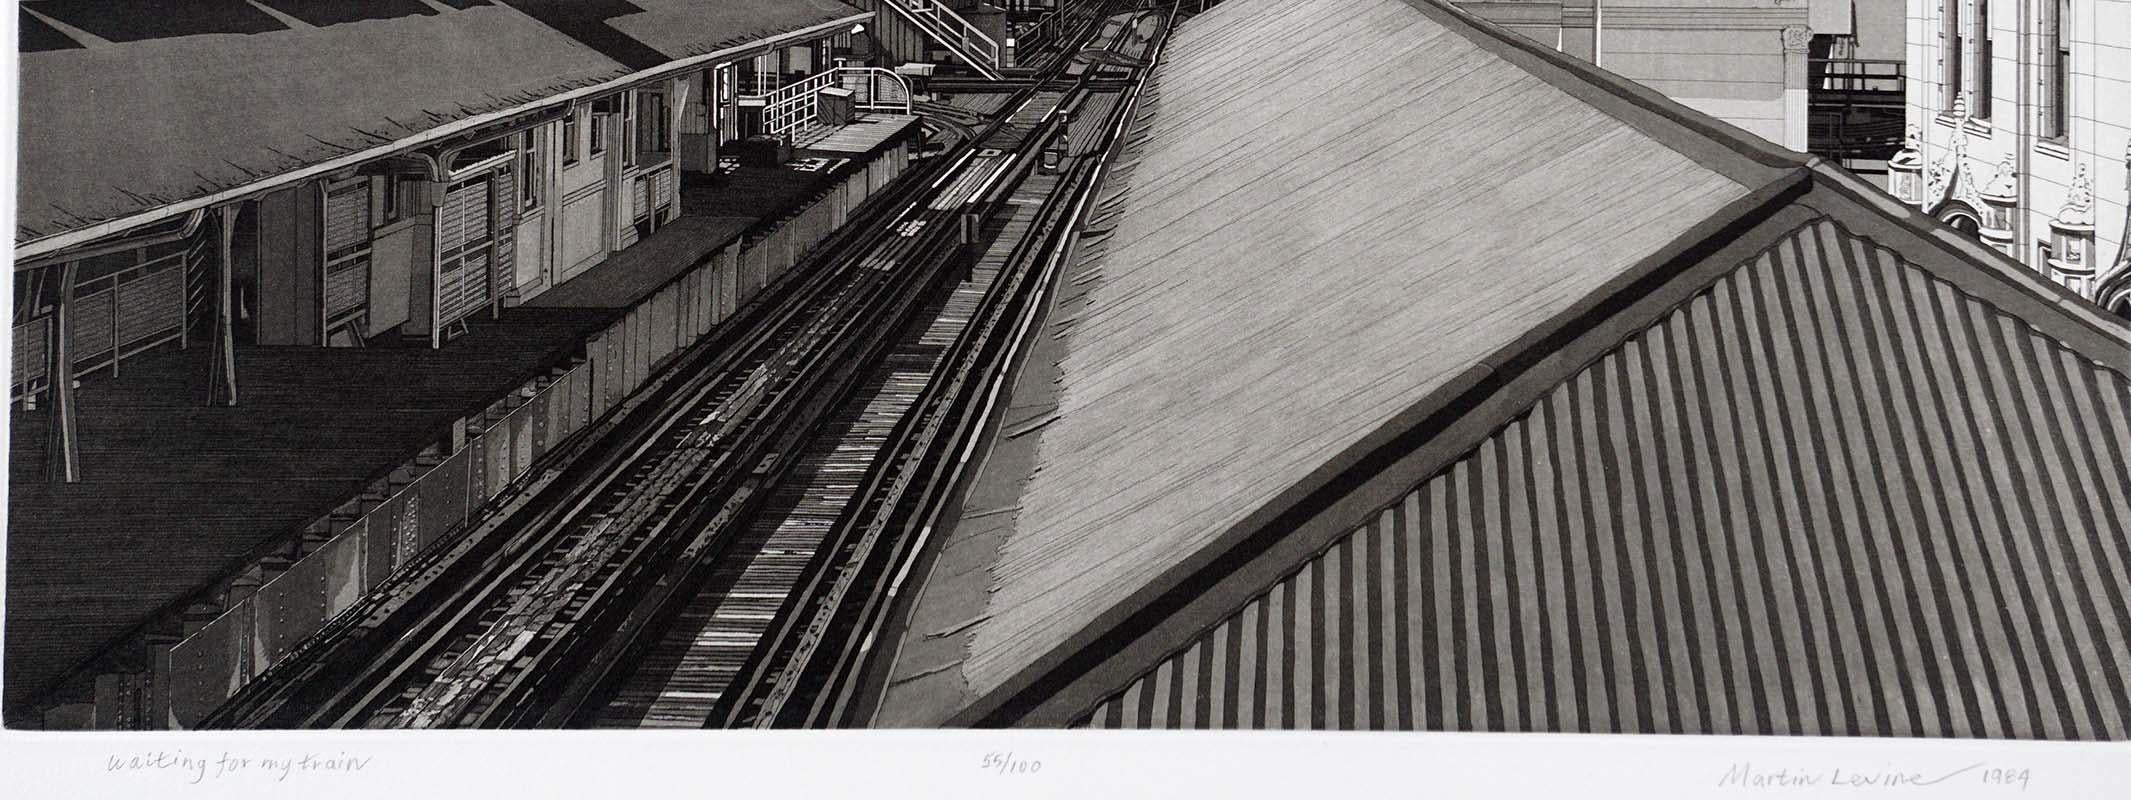 Waiting For My Train (croisés qui créent le Chicago EL / Merchandise Mart) - Noir Landscape Print par Martin Levine